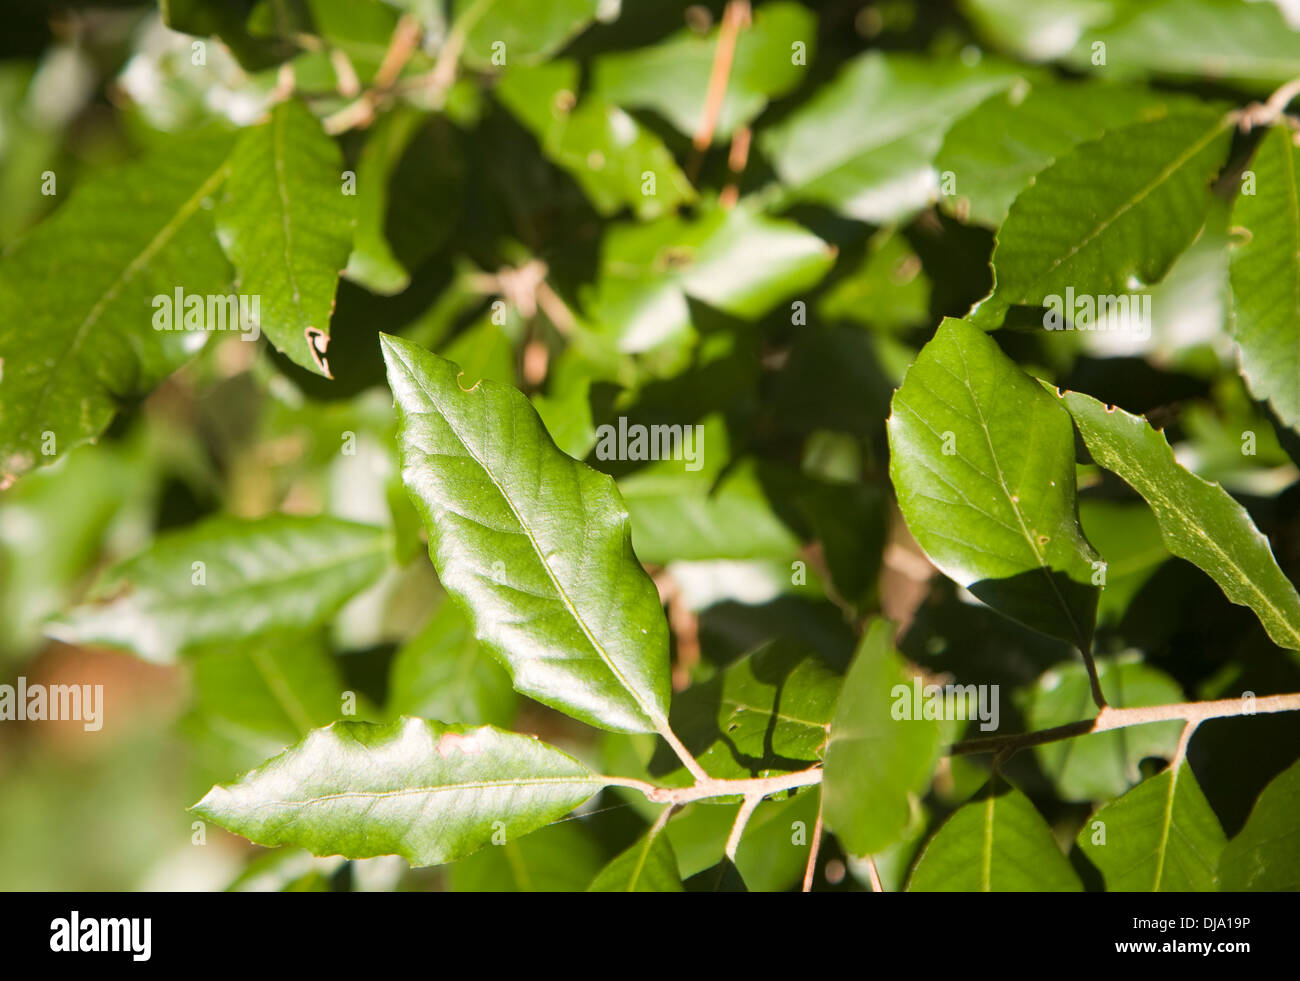 Immergrüne Blätter von der Steineiche oder Steineiche Quercus Ilex, Stockfoto